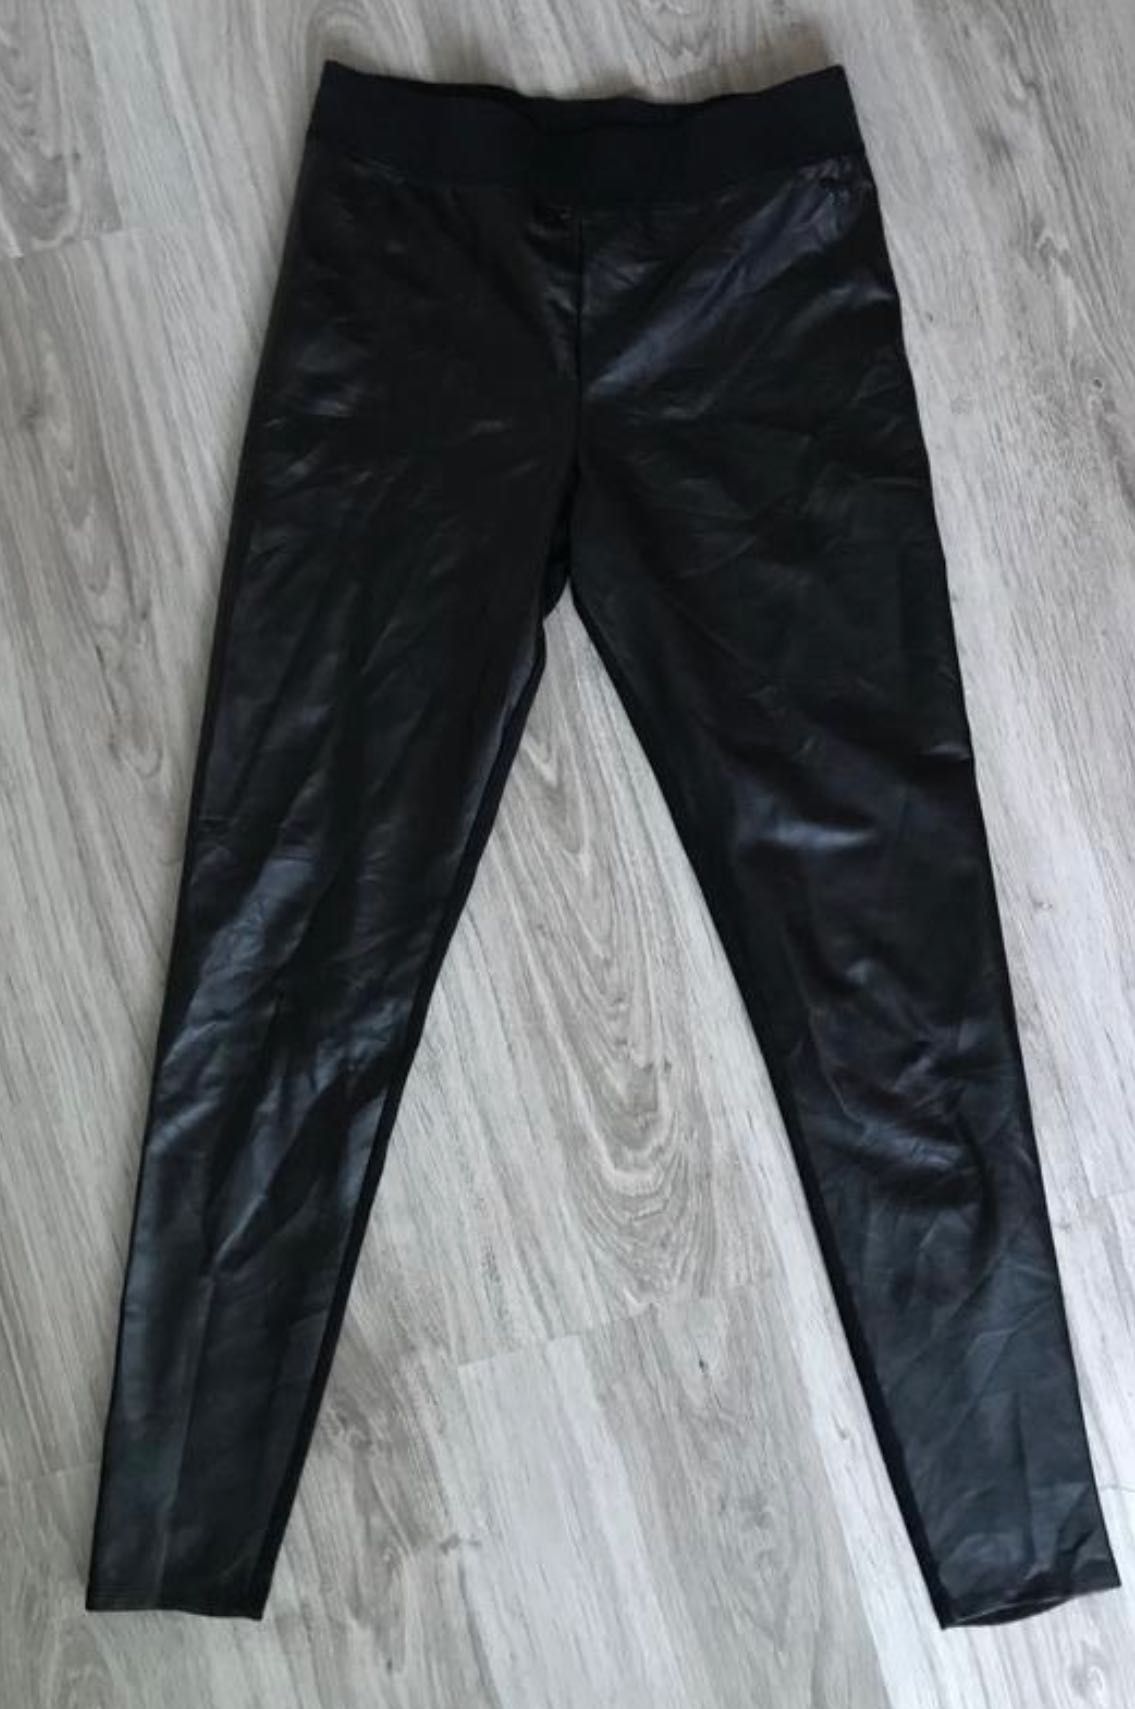 Victoria’s Secret leather leggings